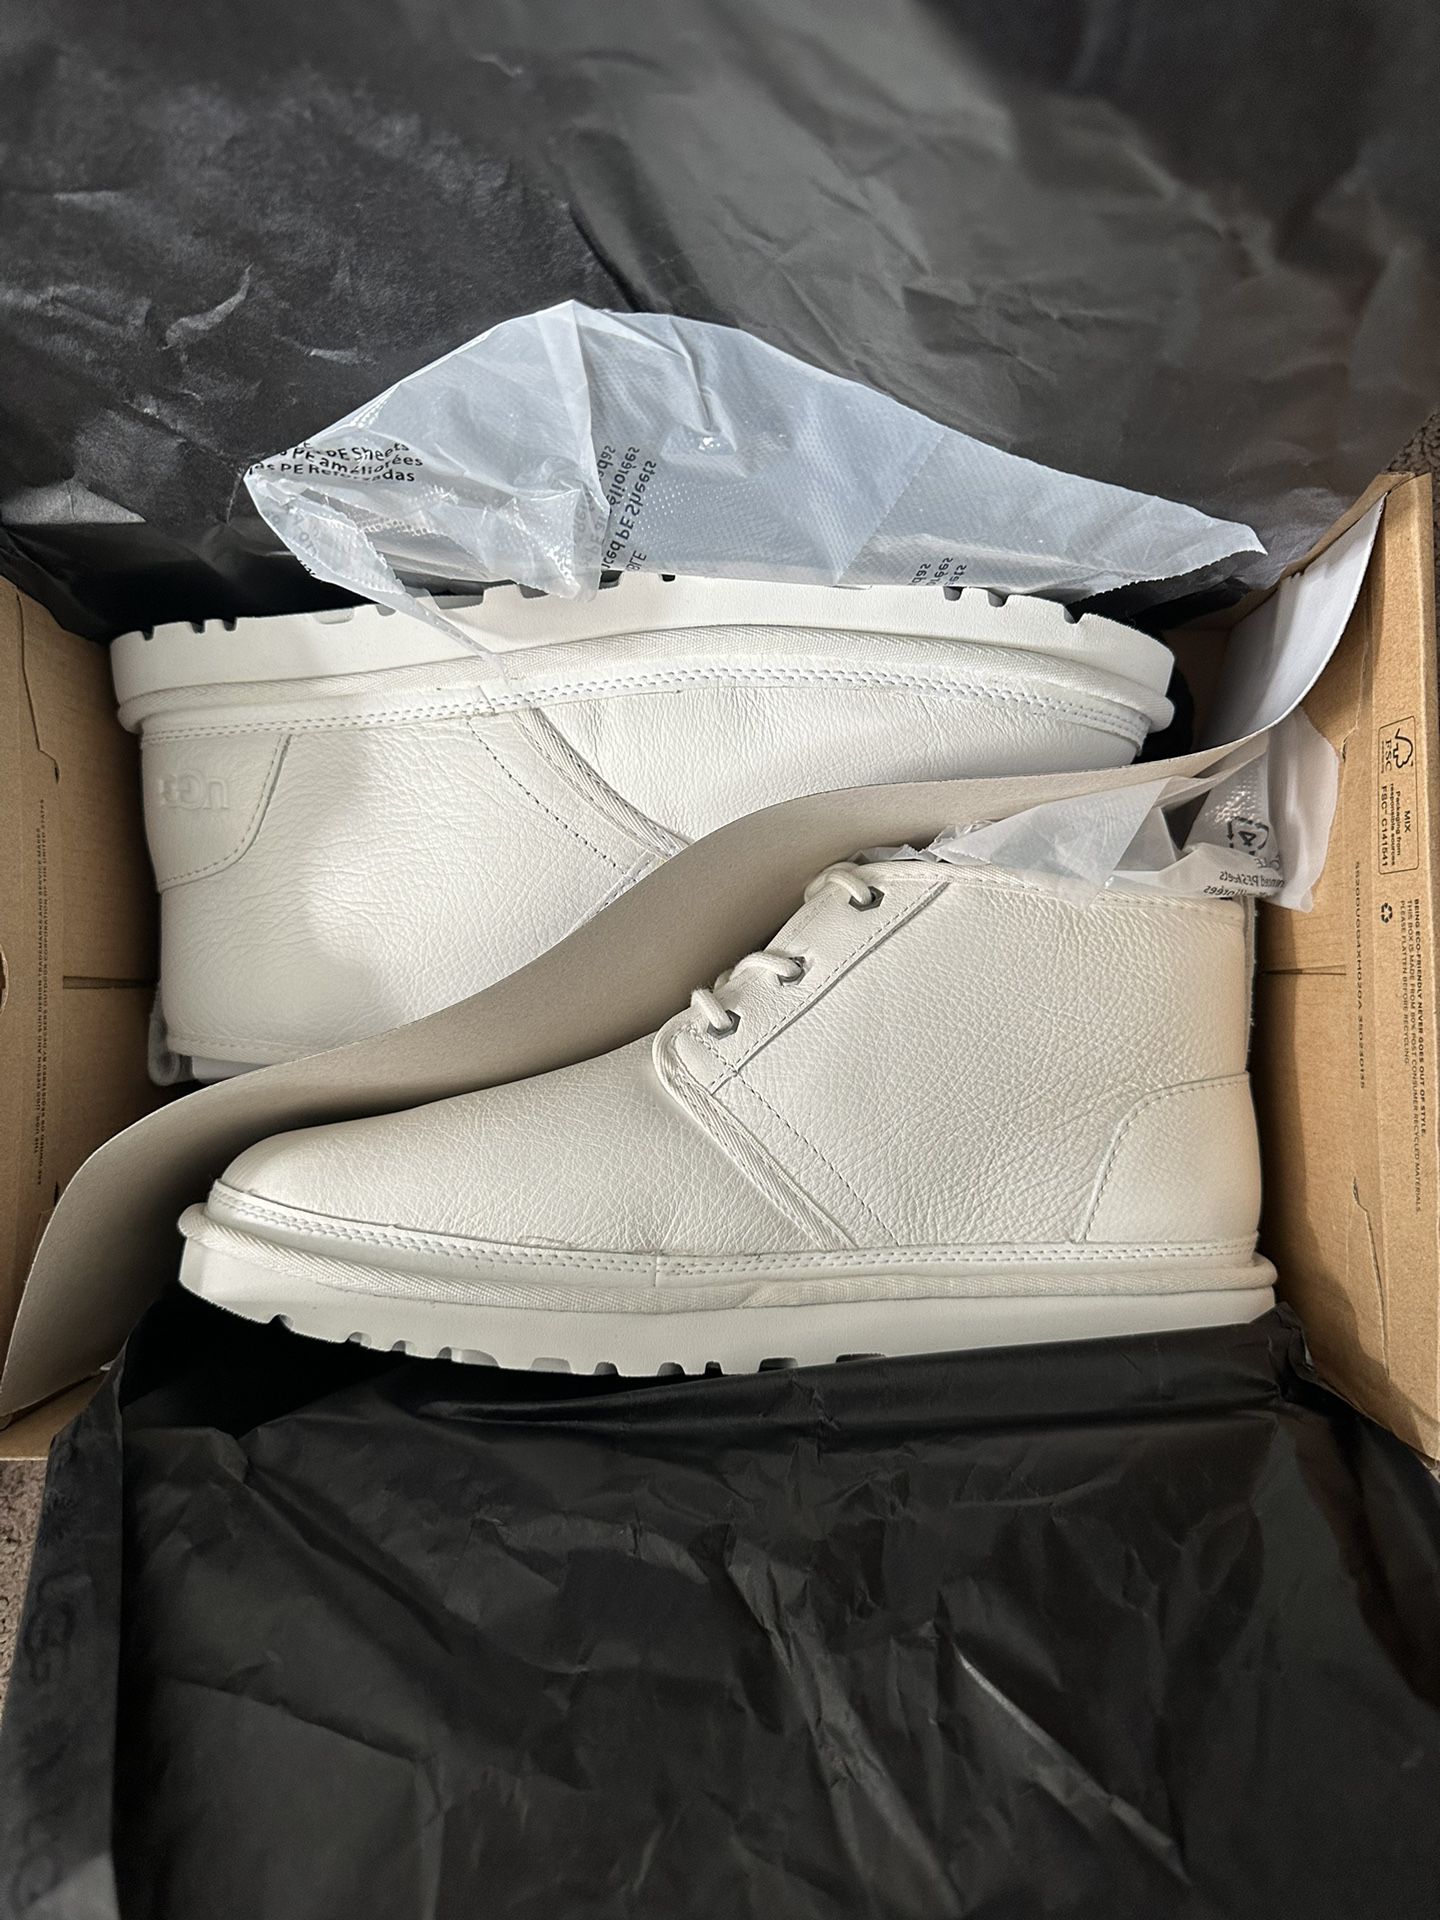 UGG Neumel Leather Boot White - SZ 11